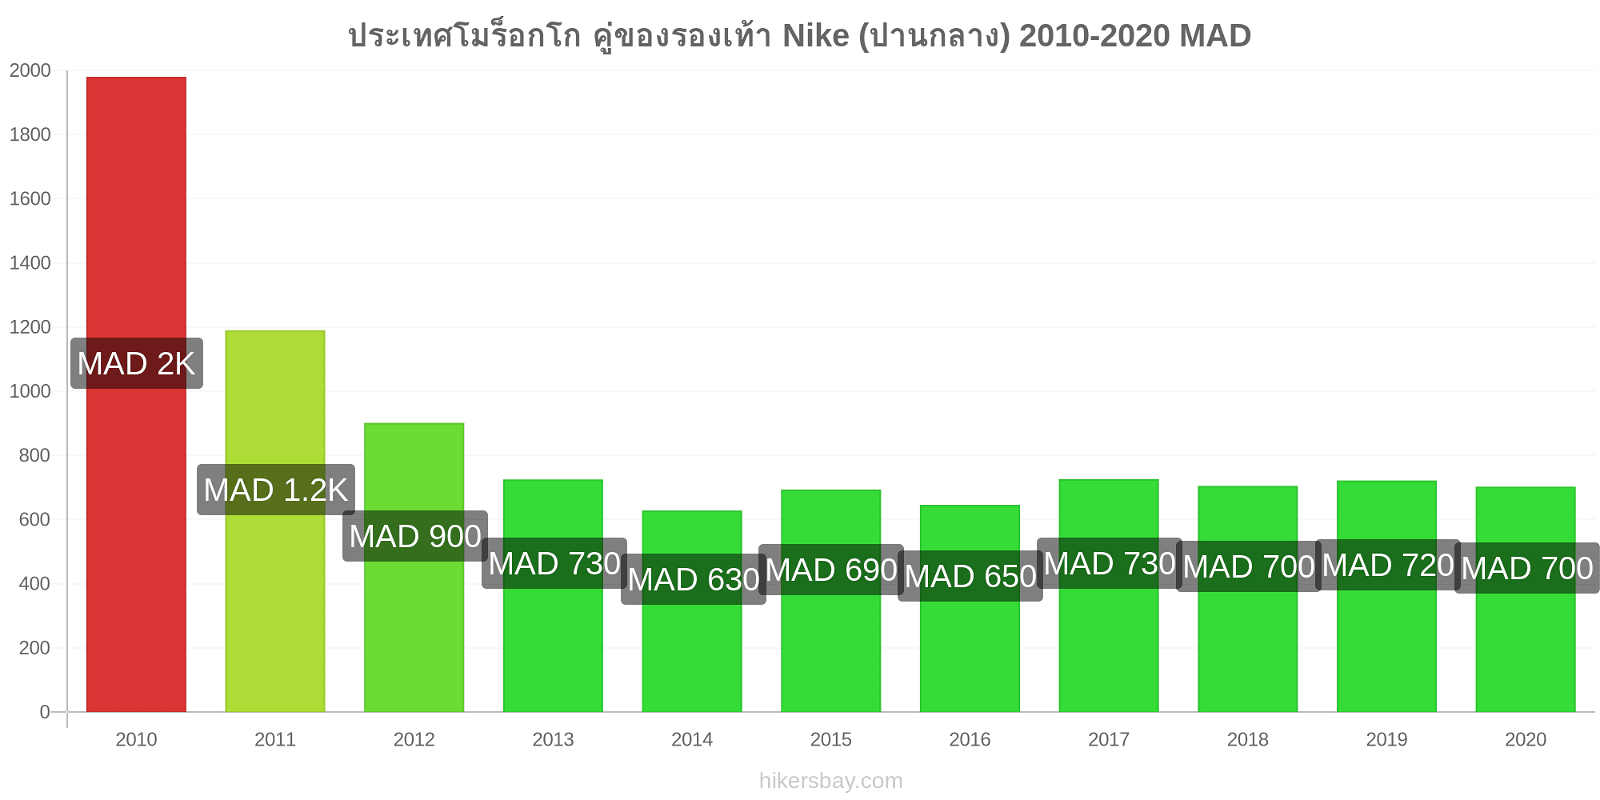 ประเทศโมร็อกโก การเปลี่ยนแปลงราคา คู่ของรองเท้า Nike (ปานกลาง) hikersbay.com